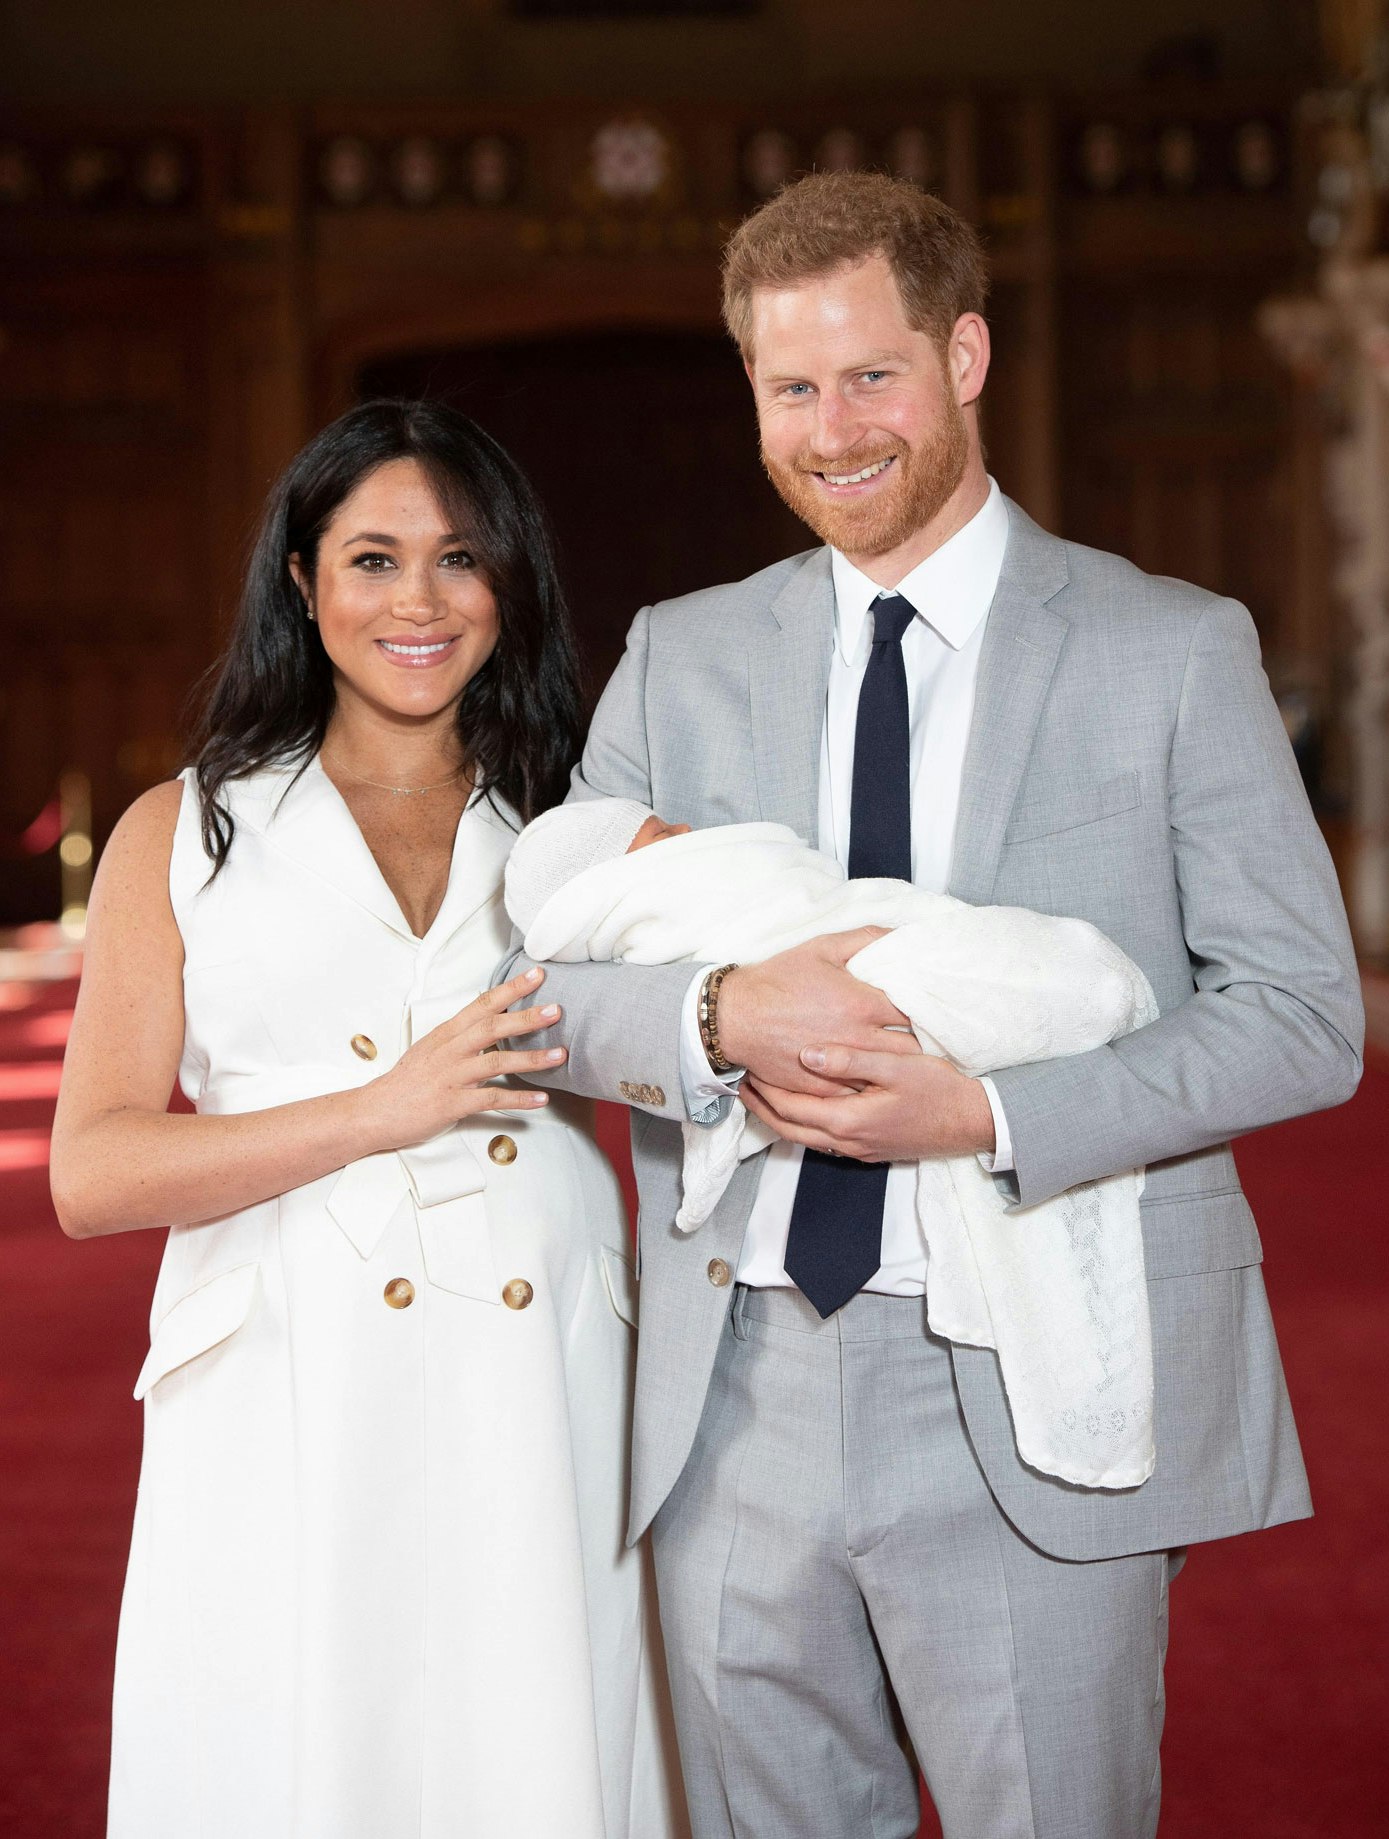 Her er meningen bag den nye royale baby, Archies, navn